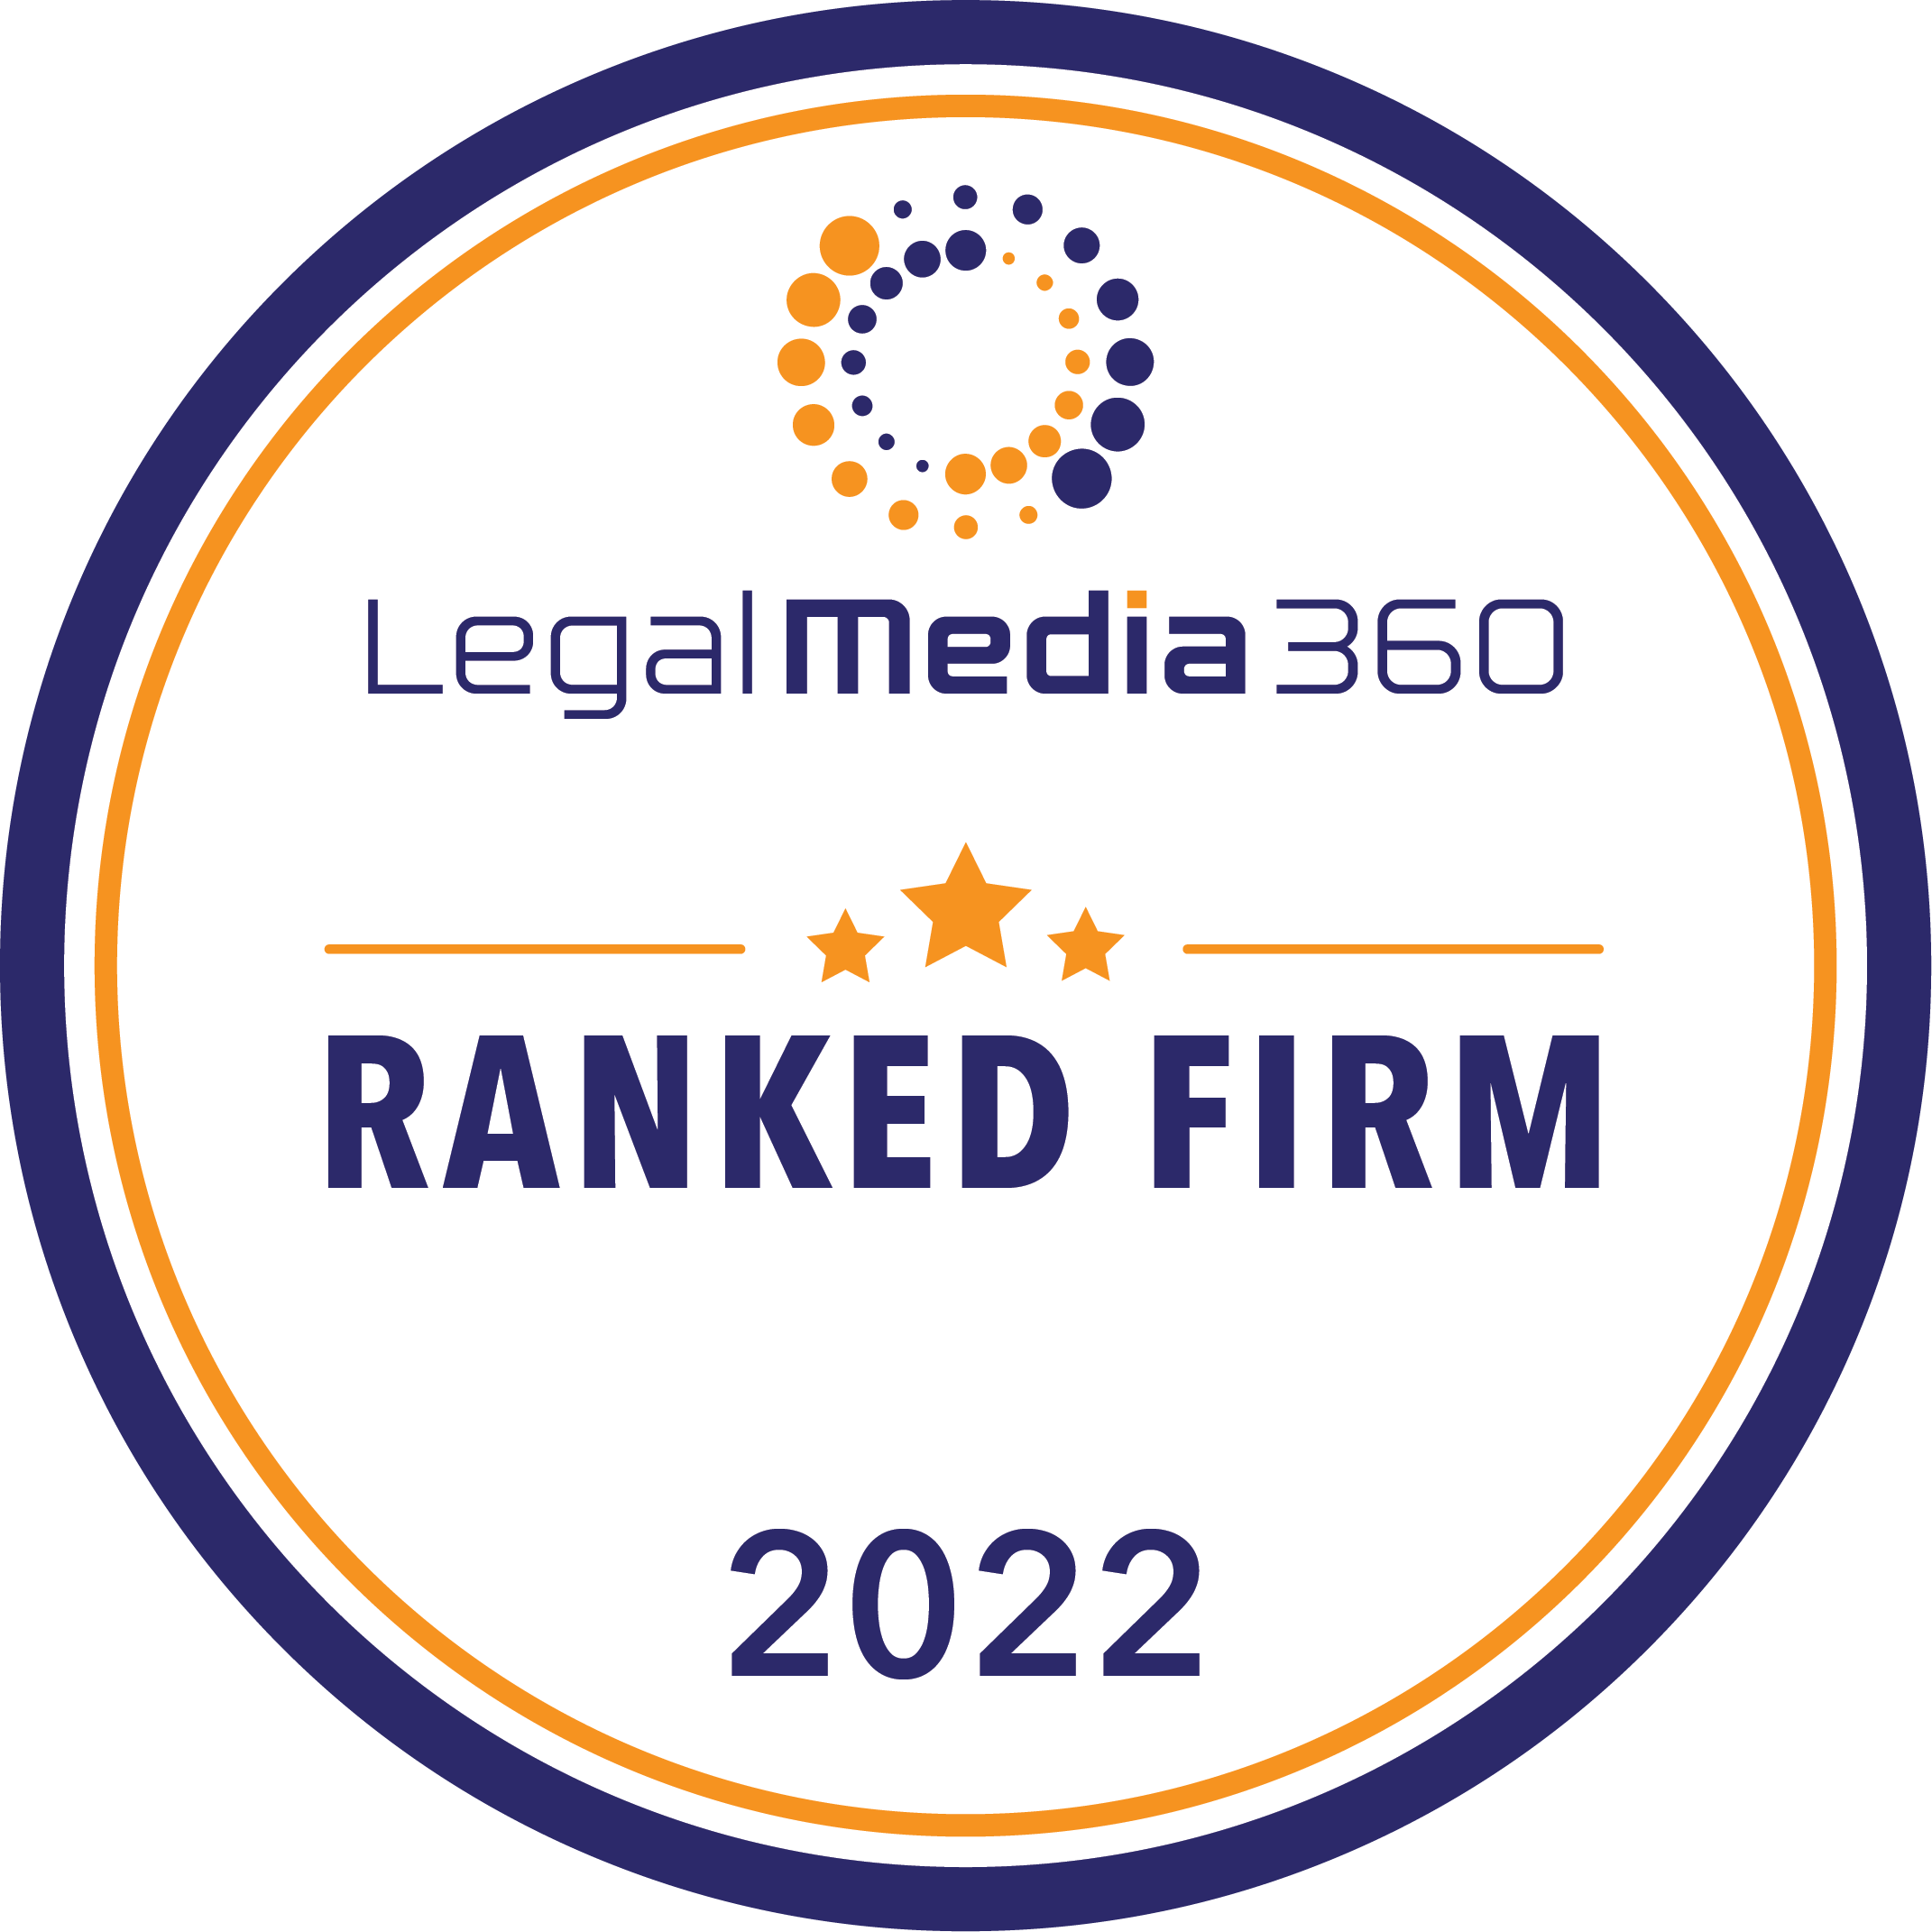 林朱律师事务所荣获《法律媒体 360》(Legal Media 360) 评为2022年度香港法律专家